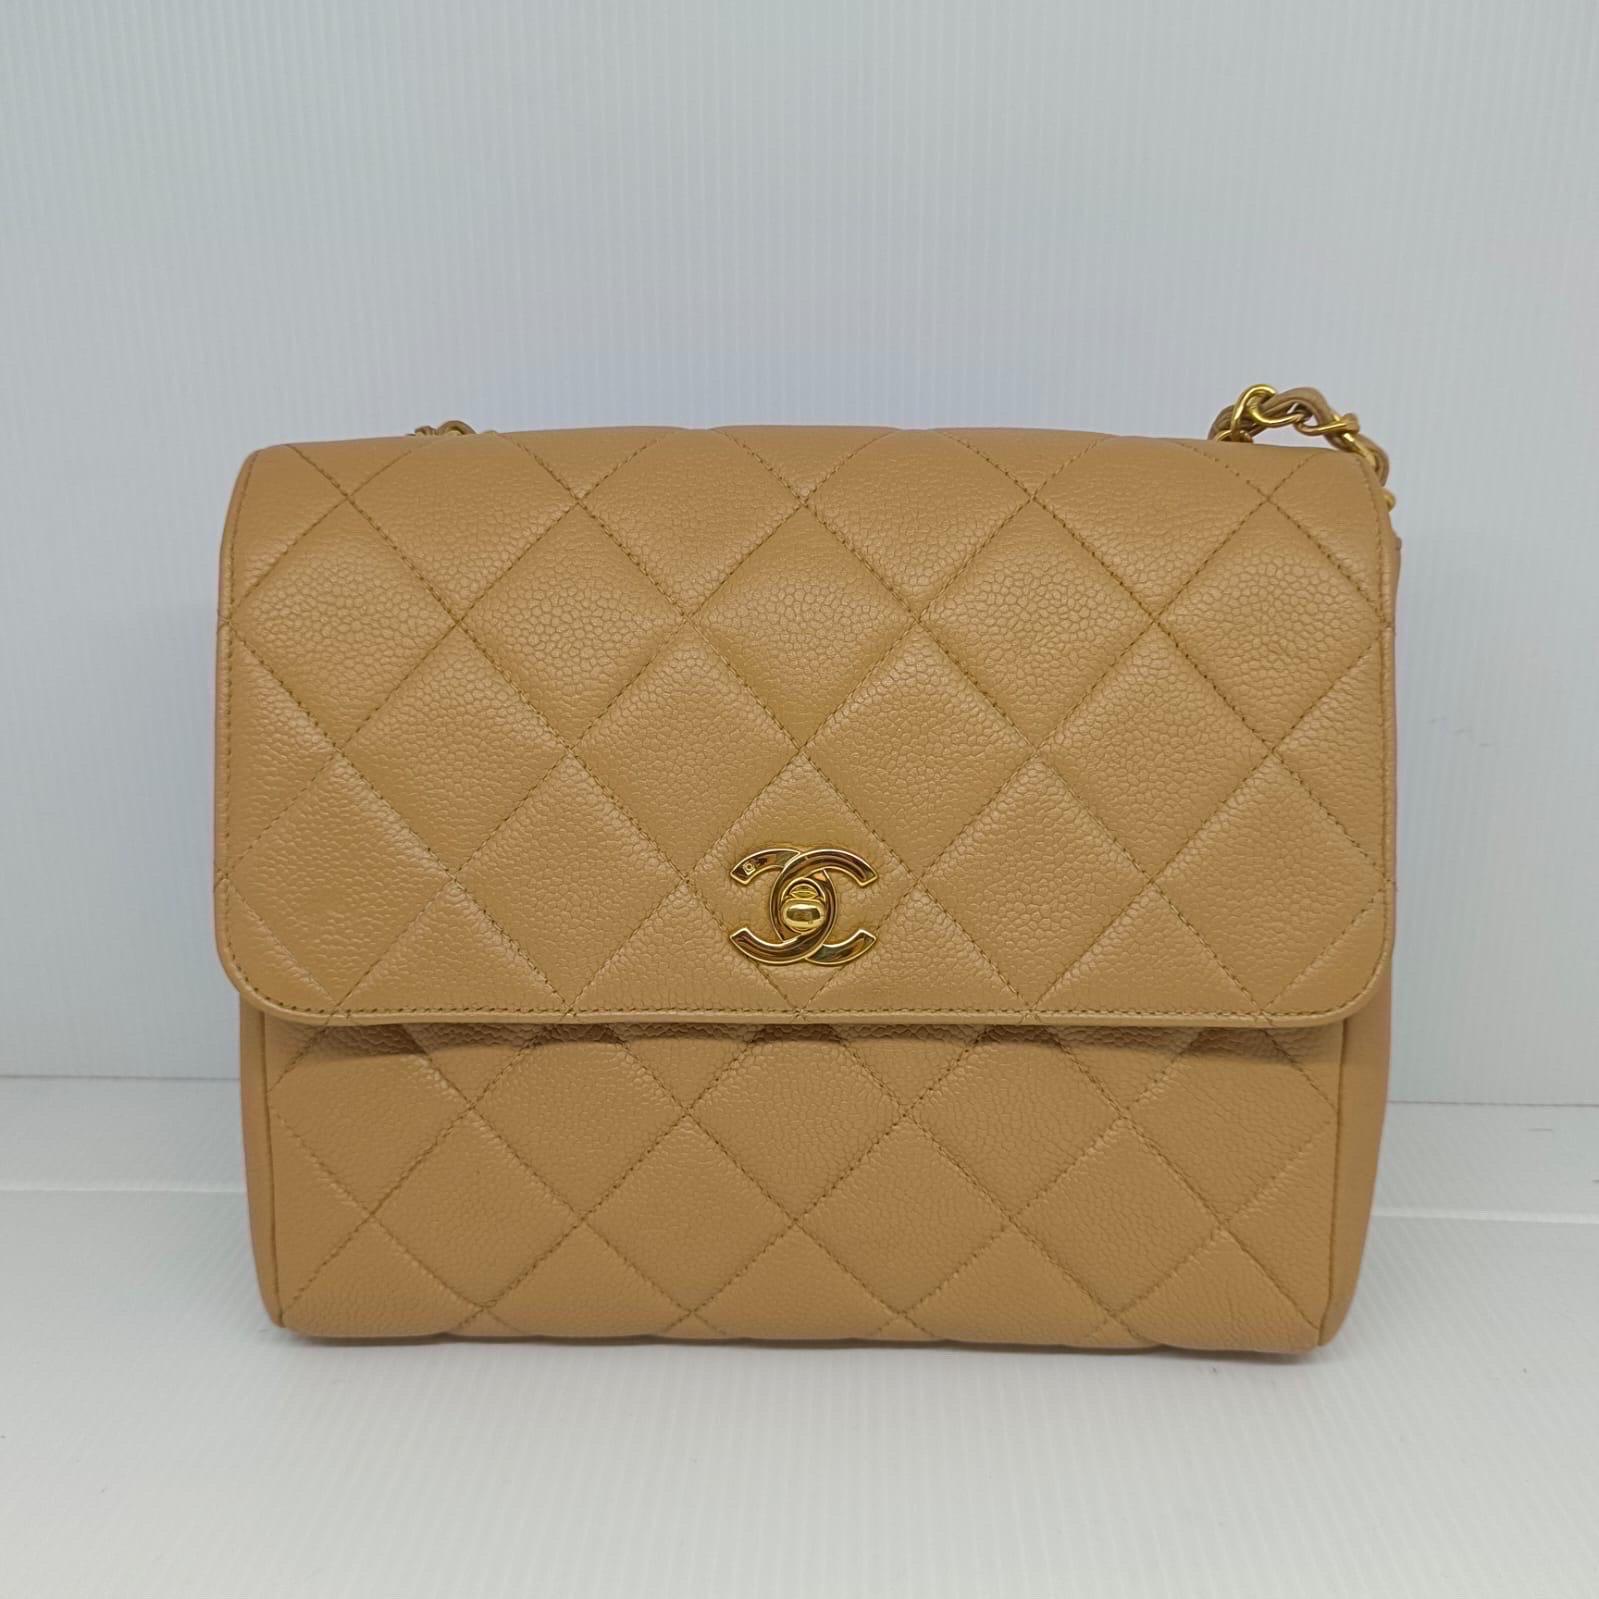 Schöne Vintage Chanel Klappe Tasche in beige mit goldenen Hardware. Serie #4. Minor Stift Marke auf dem Futter und Licht dunkle Flecken auf dem Leder umschlungenen Ketten. Wird nur mit dem Holoaufkleber geliefert. 